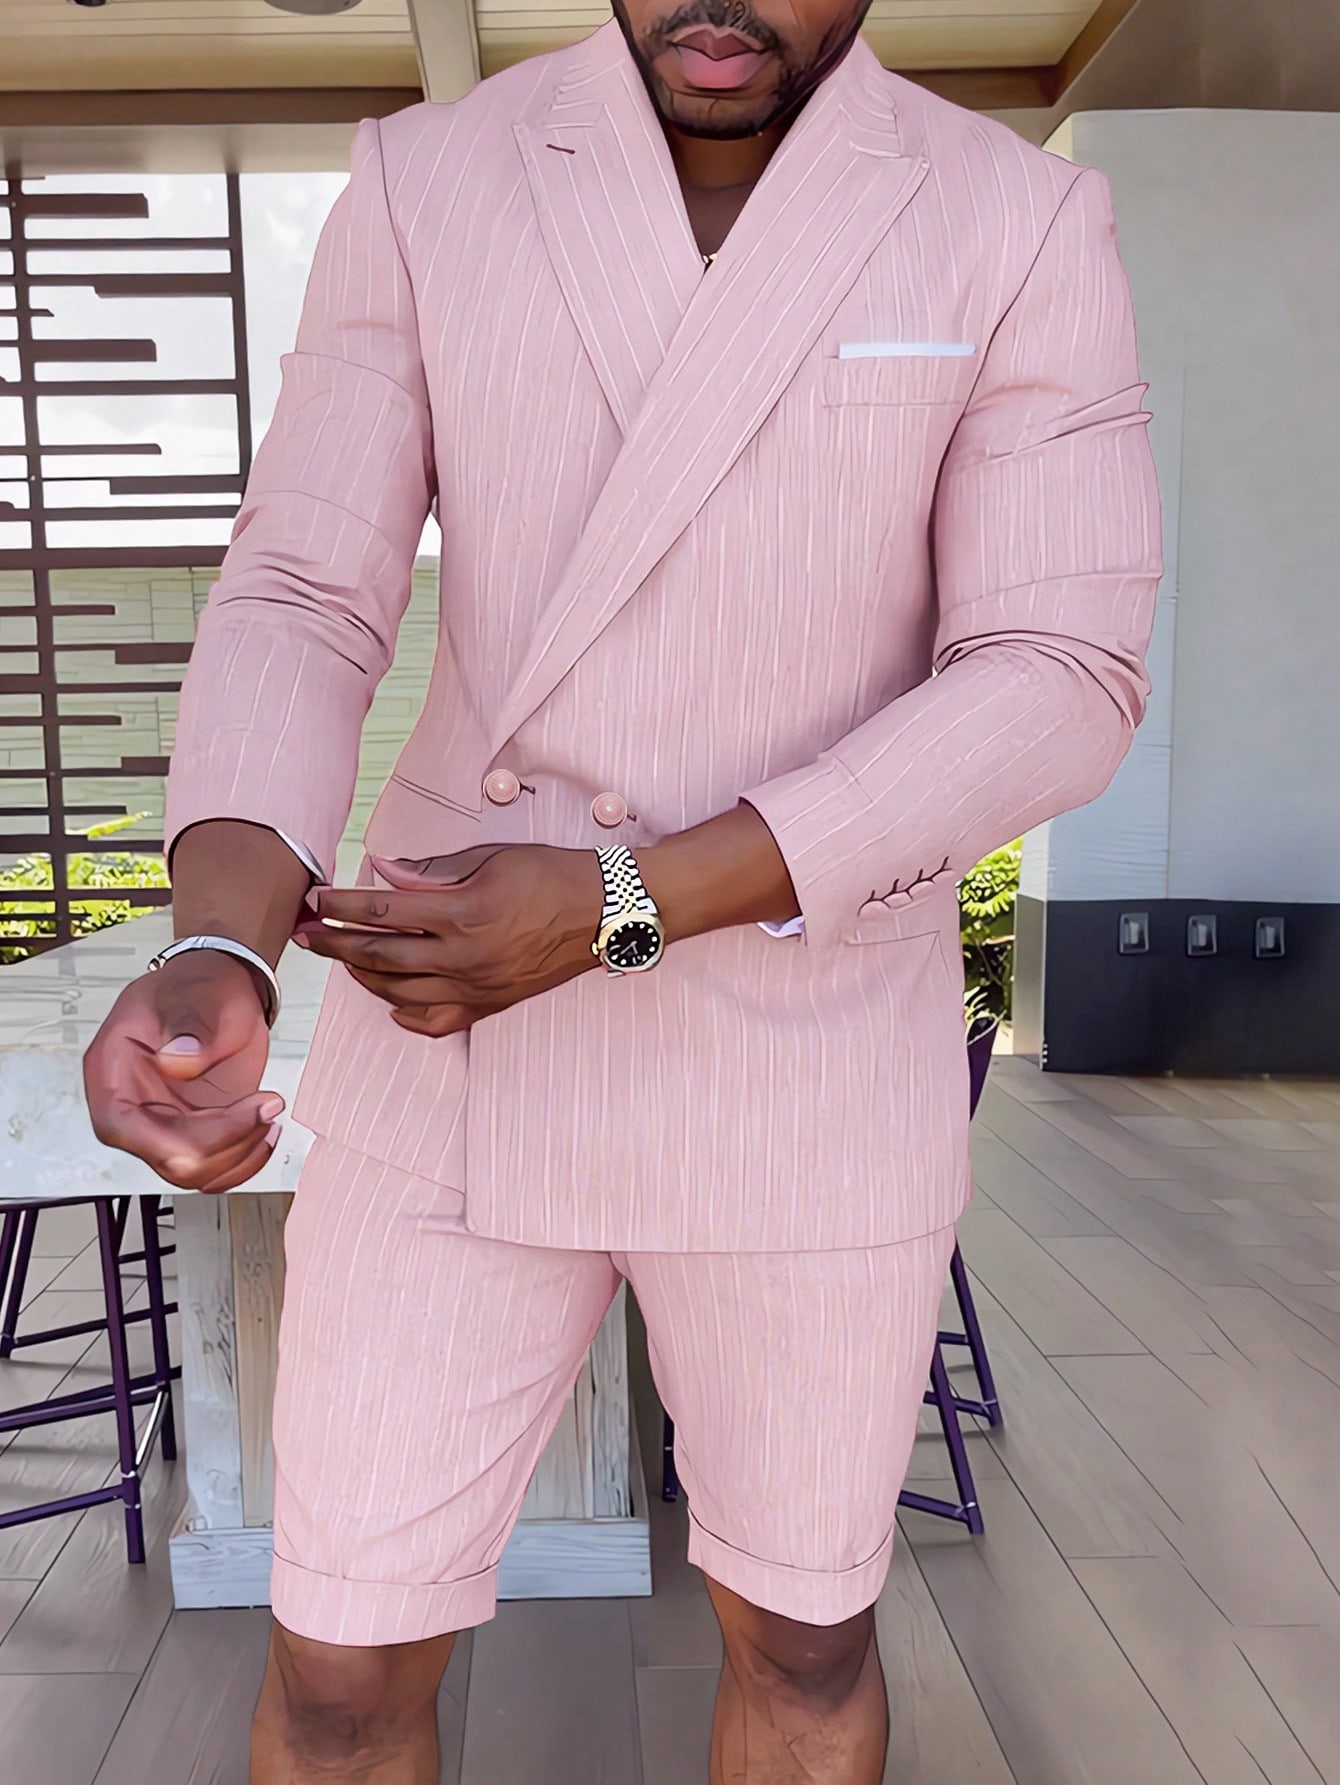 Manfinity AFTRDRK Мужской двубортный костюм в полоску с острыми лацканами, розовый